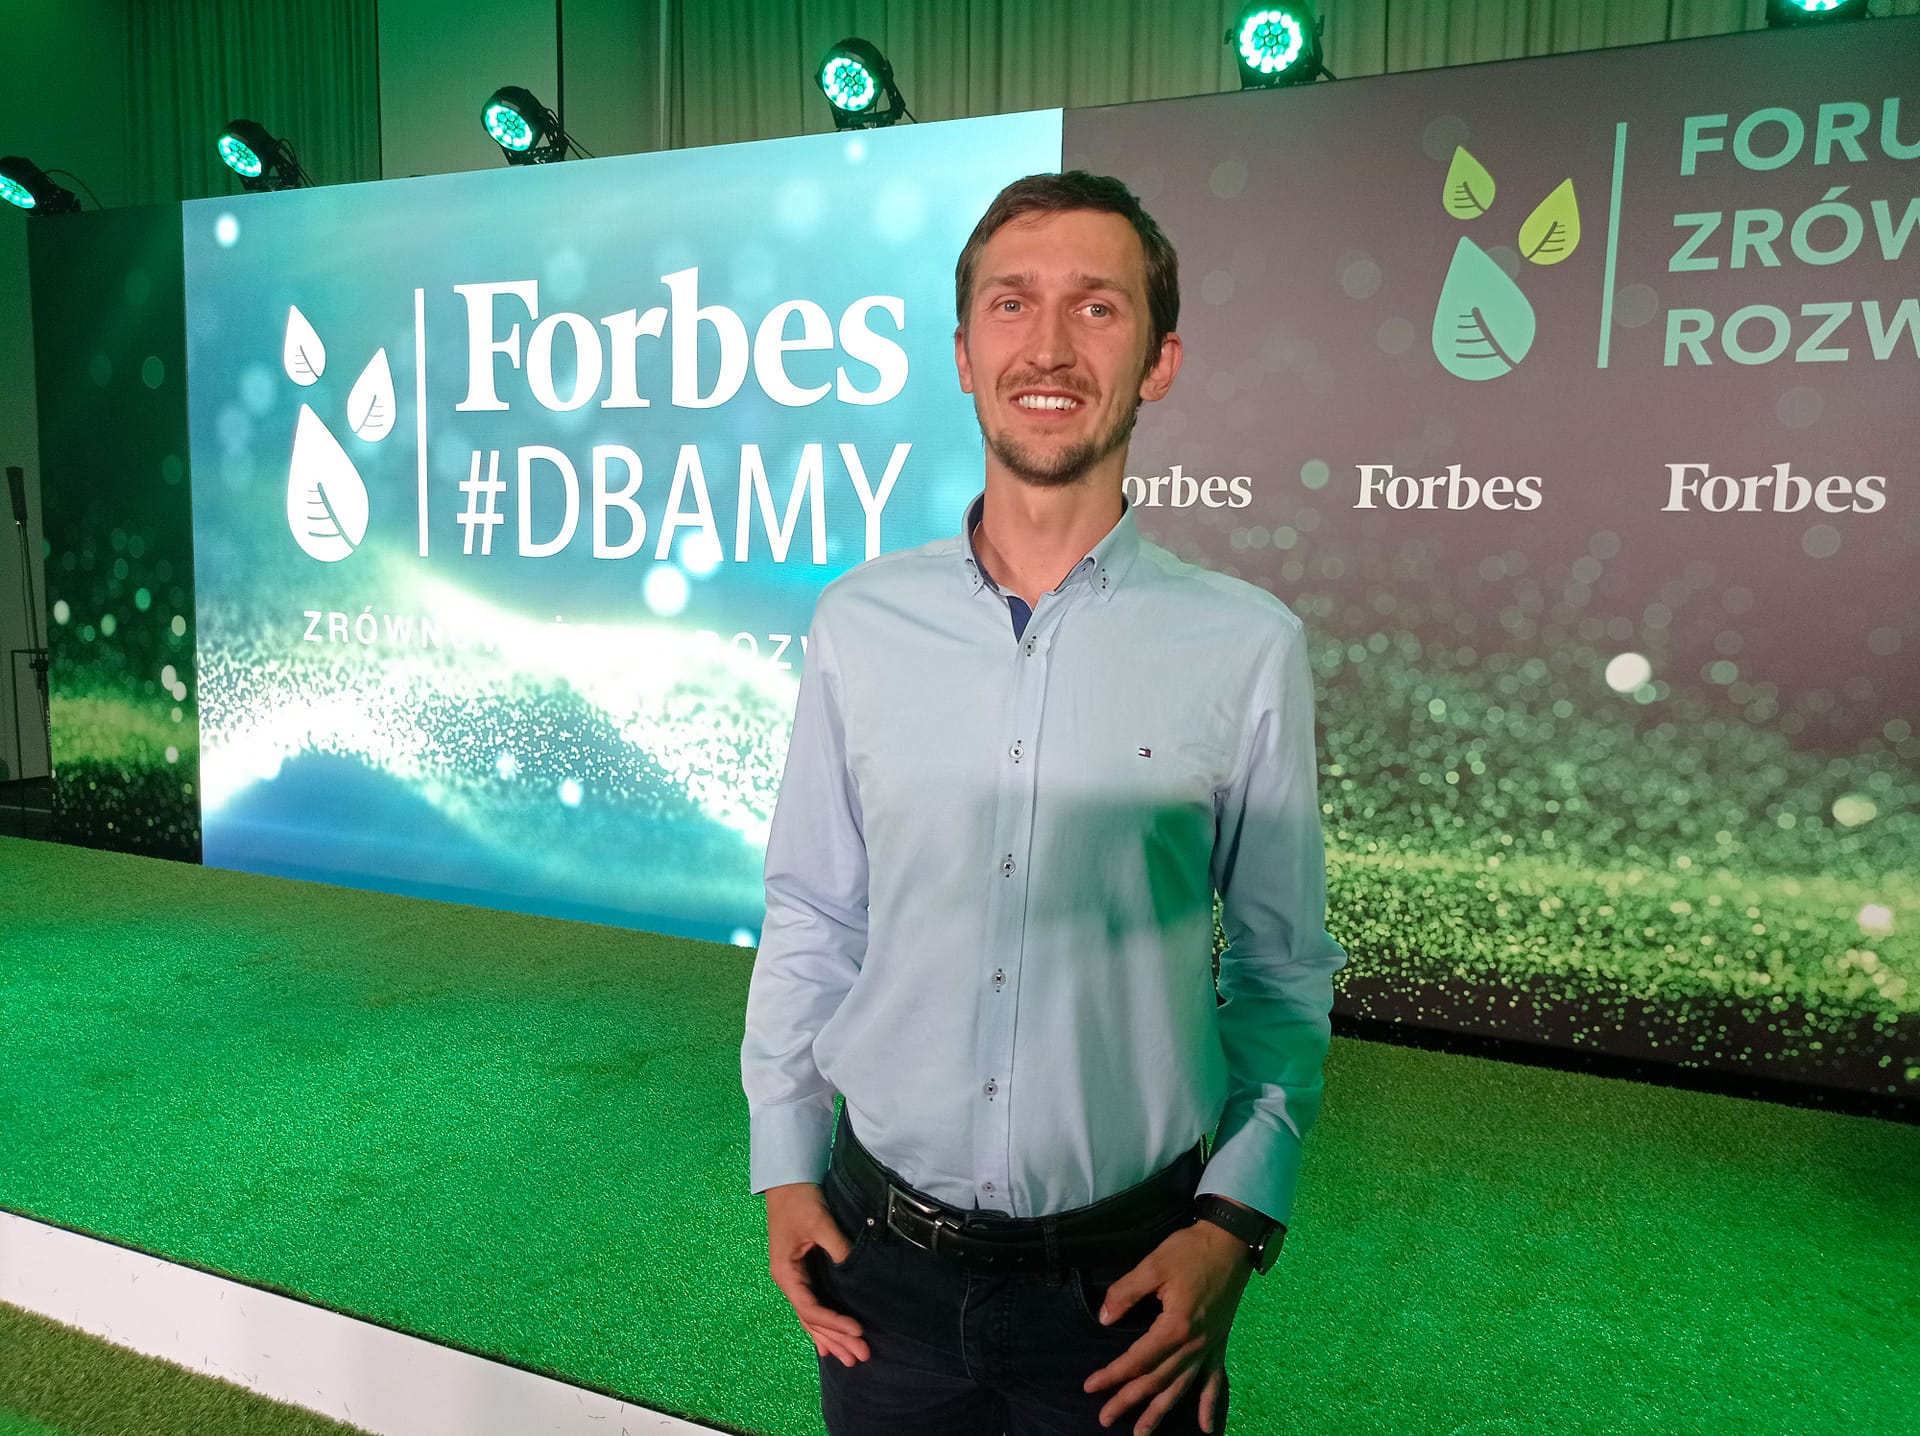 Forbes Forum Zrównoważonego Rozwoju